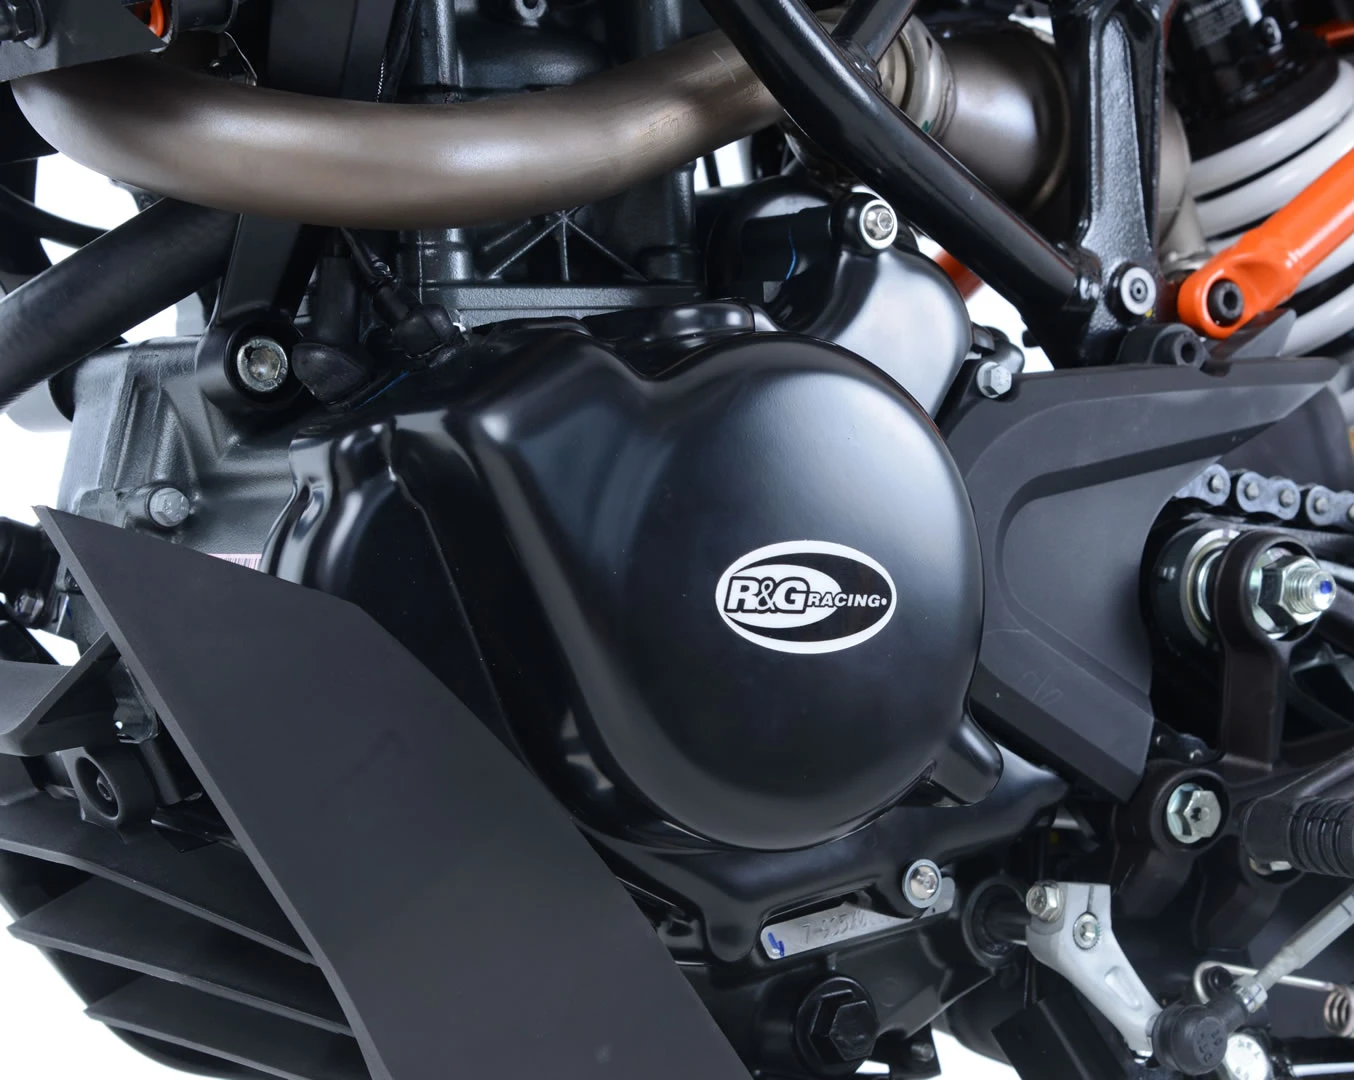 Engine Case Cover Kit (2pc) for KTM 125 Duke '17-'23 & 200 Duke '17-